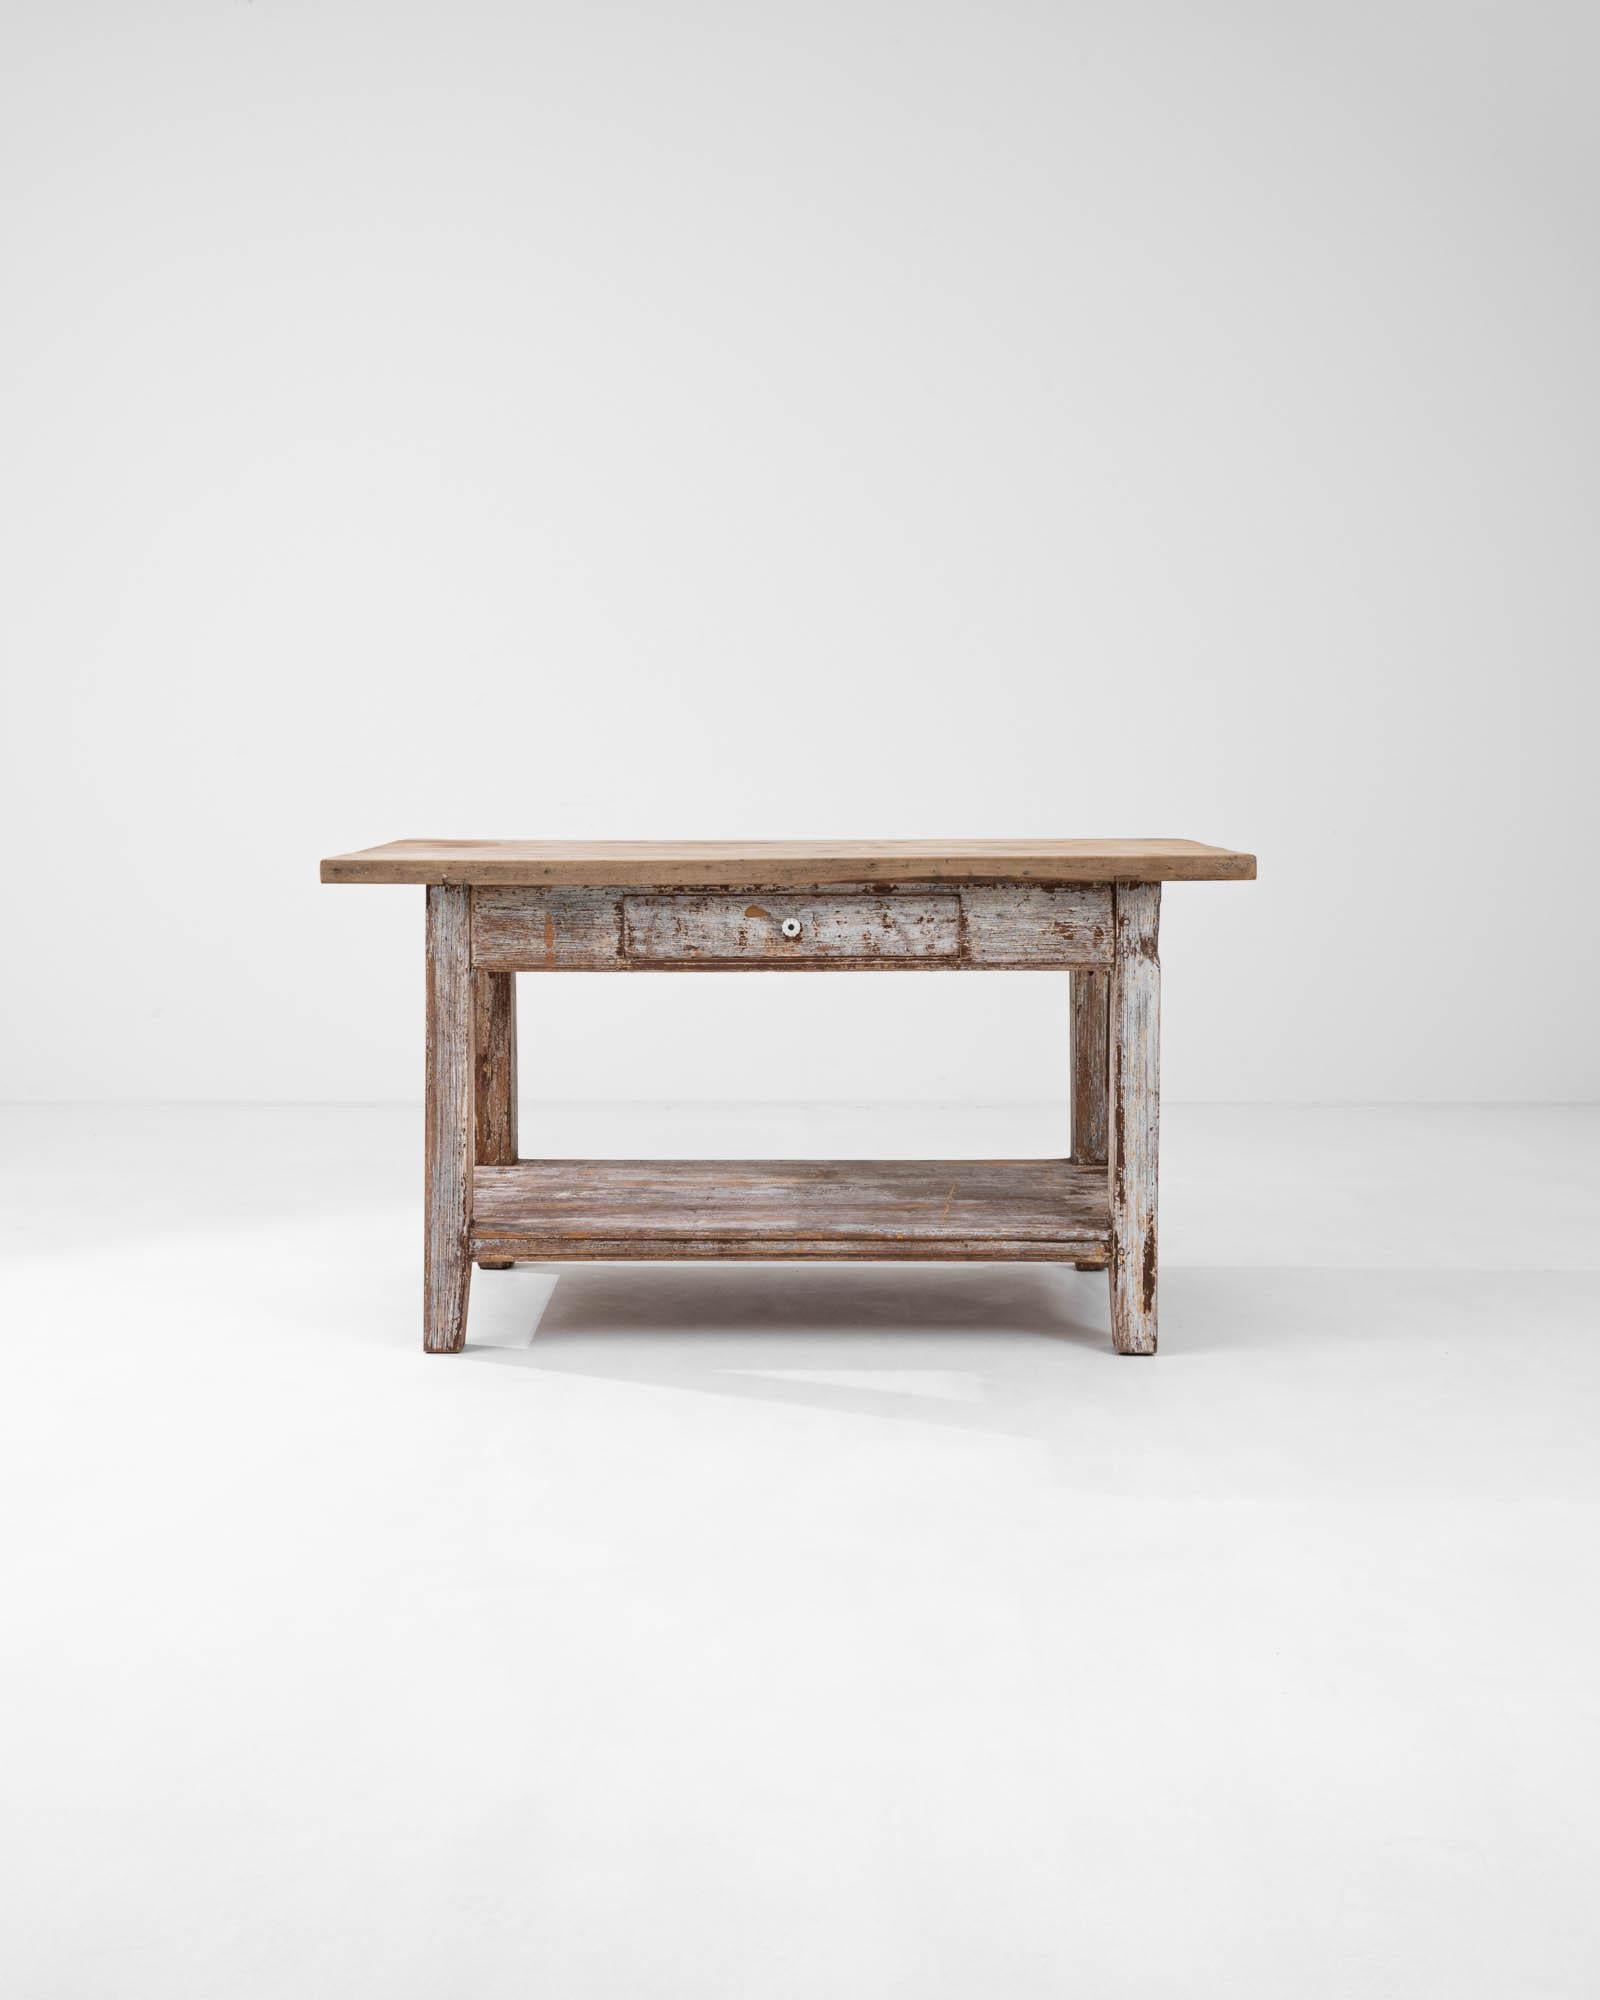 Die schlichte, strapazierfähige Form dieses Beistelltischs im Vintage-Stil hat einen zeitlosen Reiz. Die Anfang des 20. Jahrhunderts in Frankreich handgefertigte Tischplatte aus dicken Holzbrettern ruht auf einem stabilen Rahmen. Eine untere